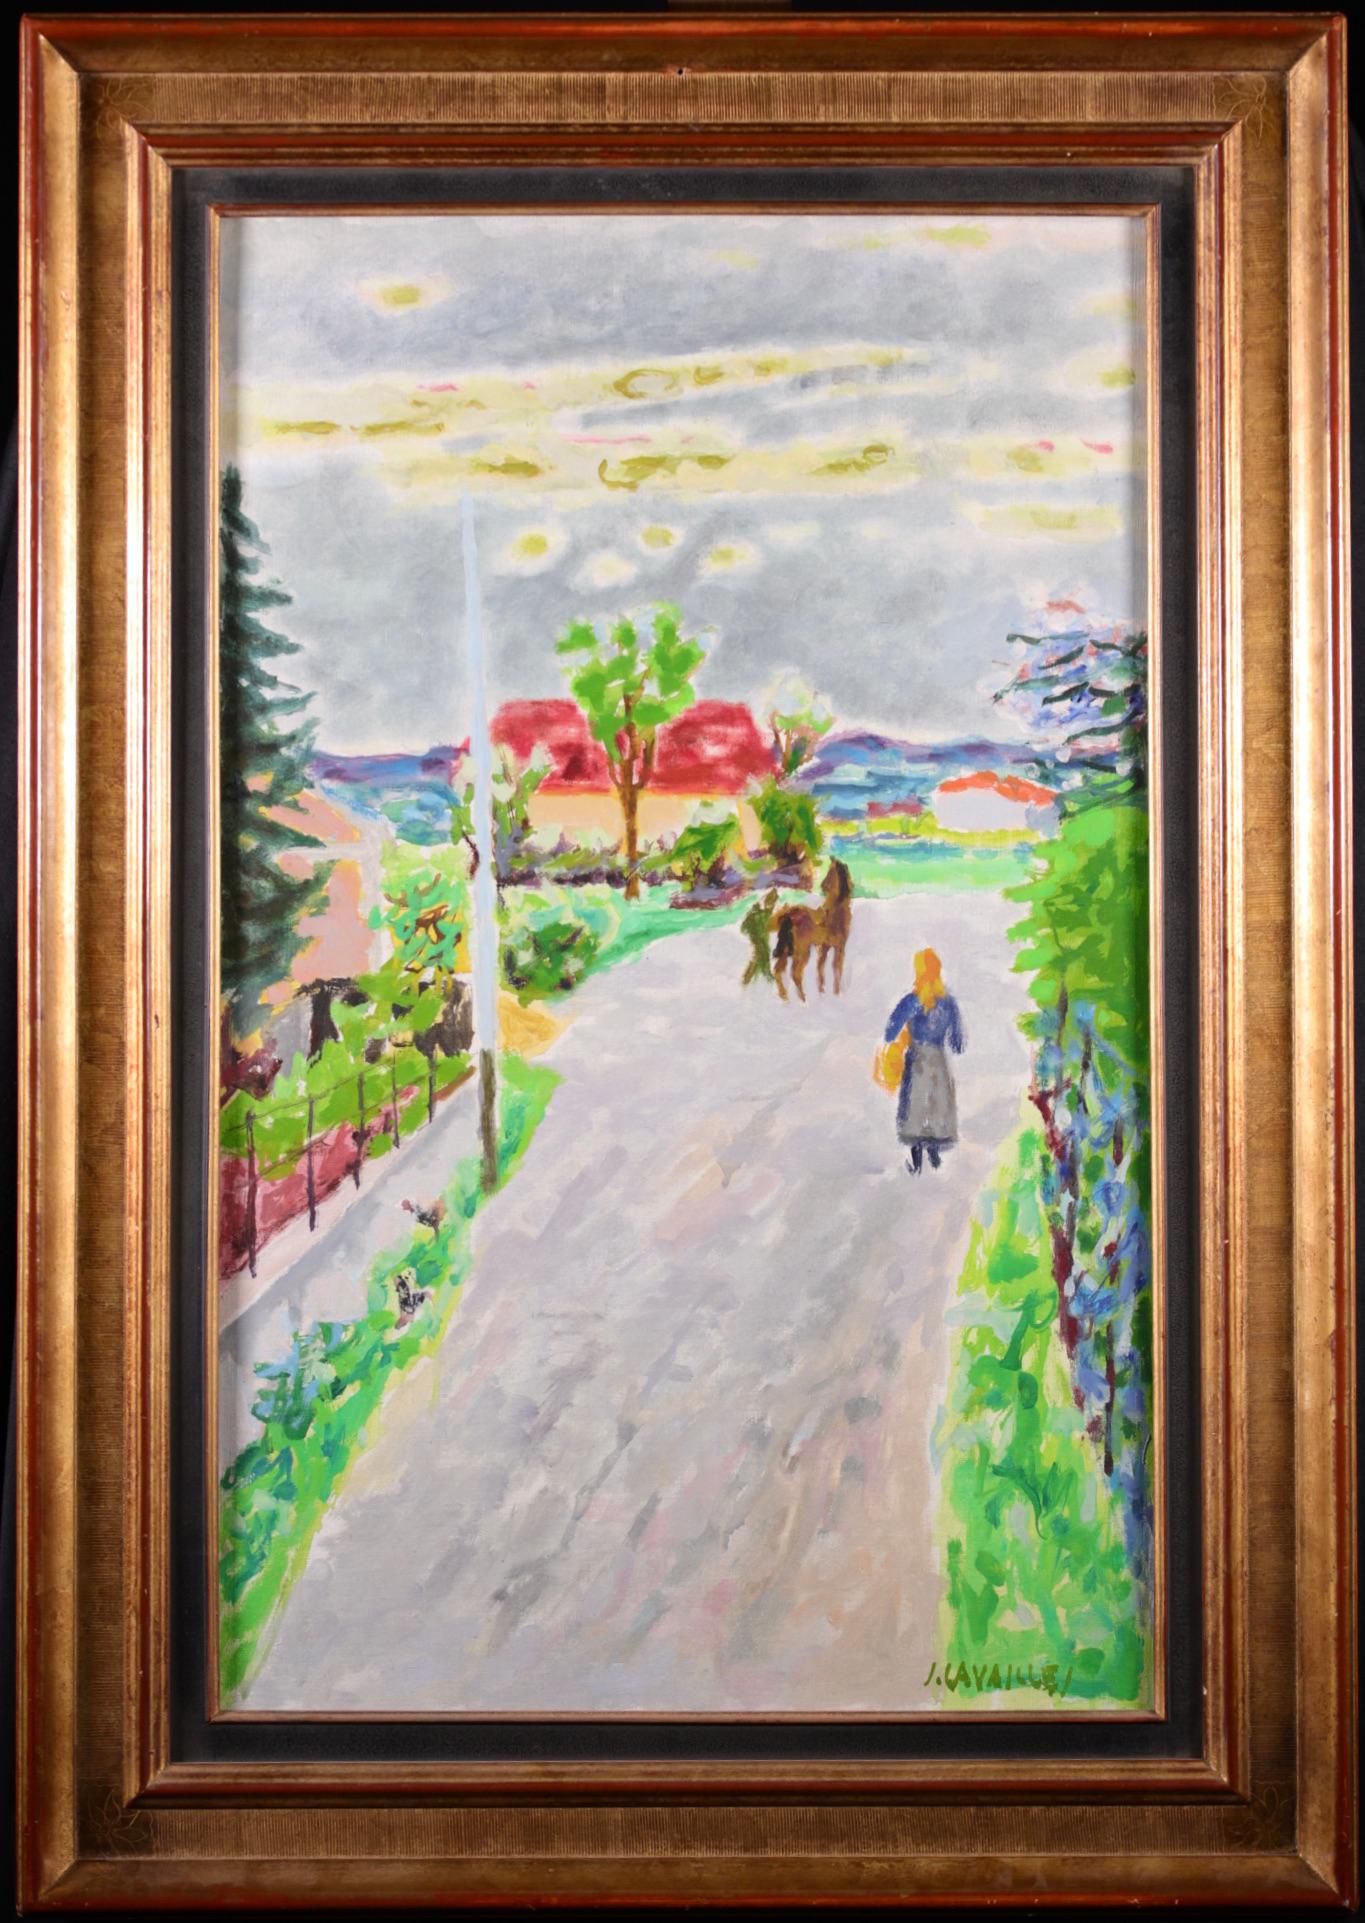 Öl auf Leinwand signiert, um 1950, vom französischen Maler Jules Cavailles, der Teil einer Gruppe von Künstlern namens „La Realite Poetique“ war. Dieses charmante Stück zeigt eine Frau, die einen Korb trägt, und einen Mann, der an einem Frühlingstag